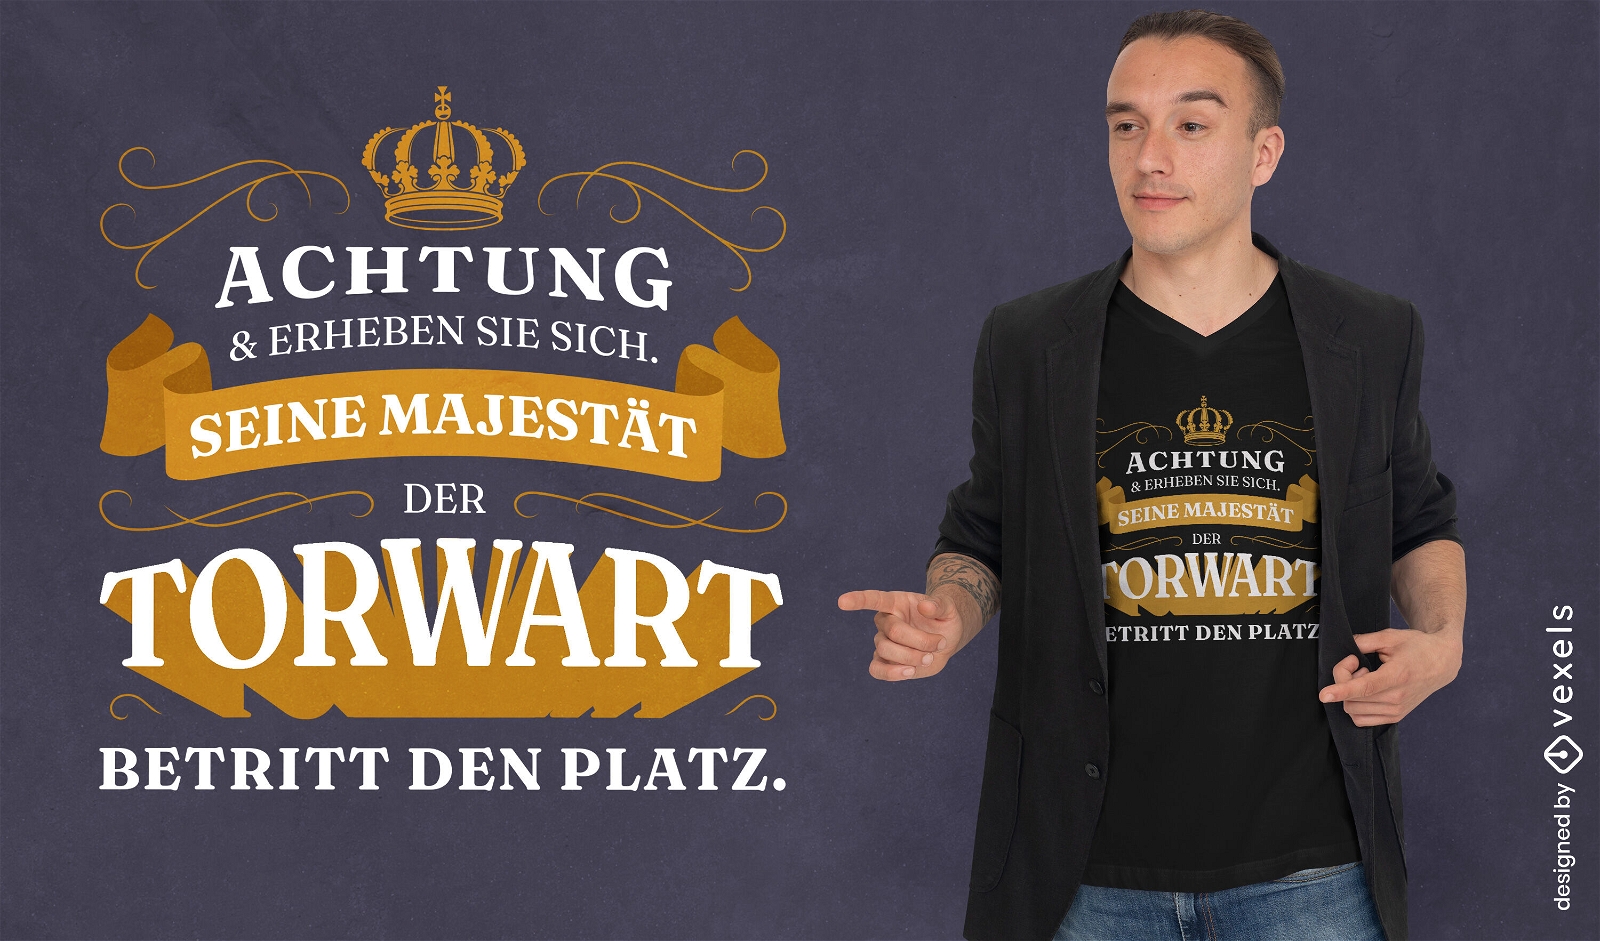 Lustiges deutsches Fußball-Zitat-T-Shirt-Design